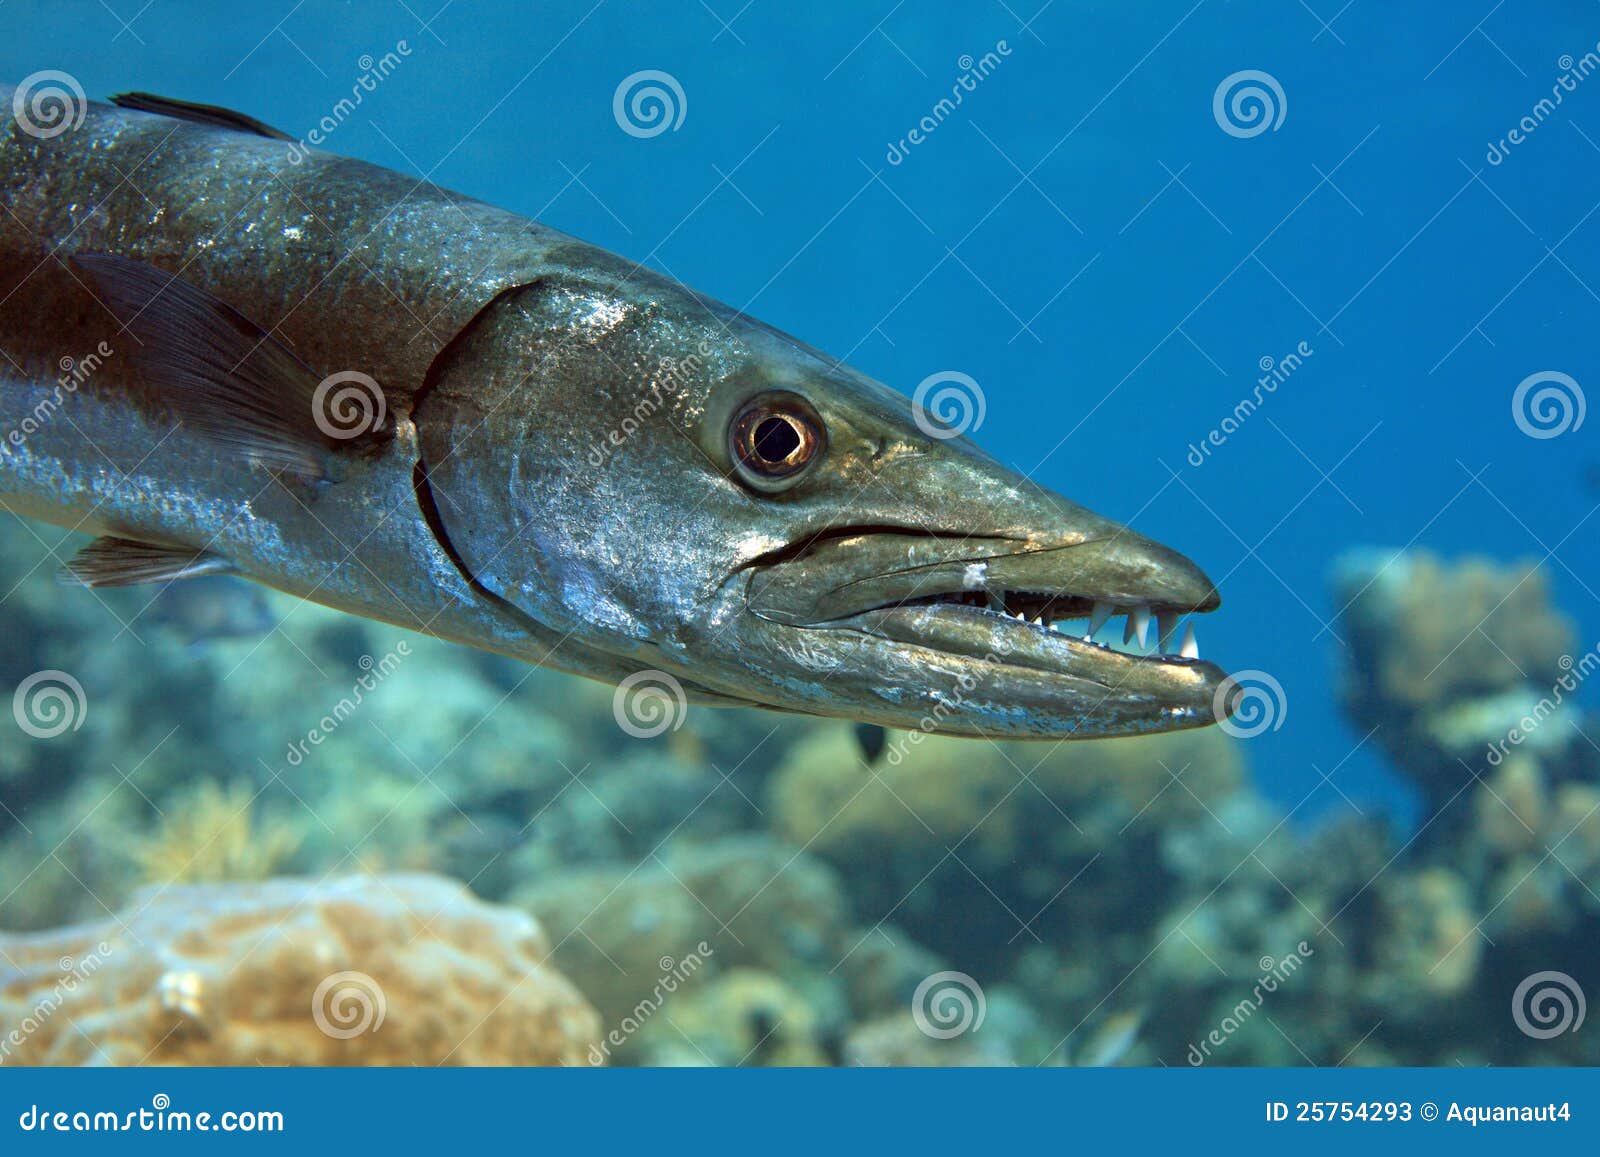 黄色尾巴梭子鱼 库存照片. 图片 包括有 在海中, 蓝色, 行动, 水肺, 旅行, 深深, 许多, 水生 - 31544698